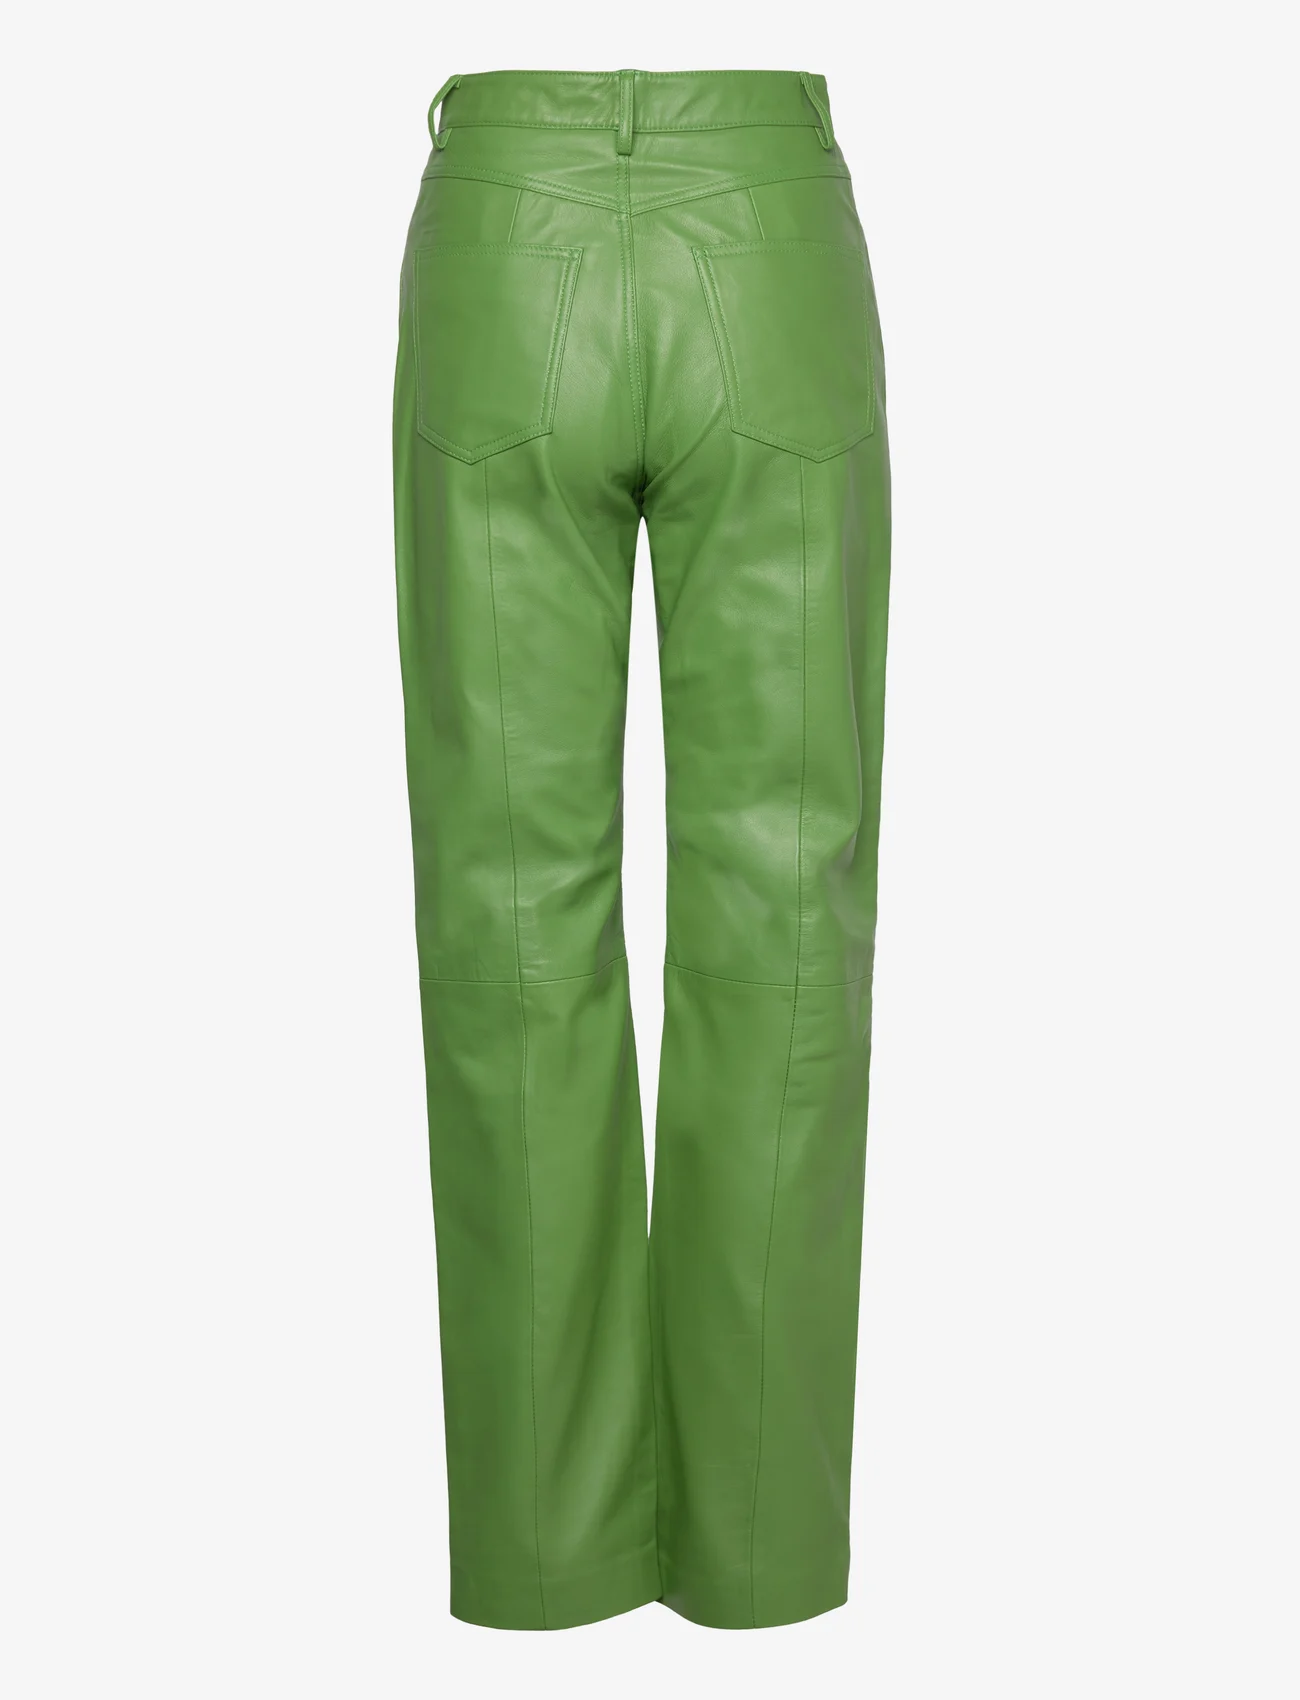 REMAIN Birger Christensen - Leather Straight Pants - festtøj til outletpriser - forest green - 1